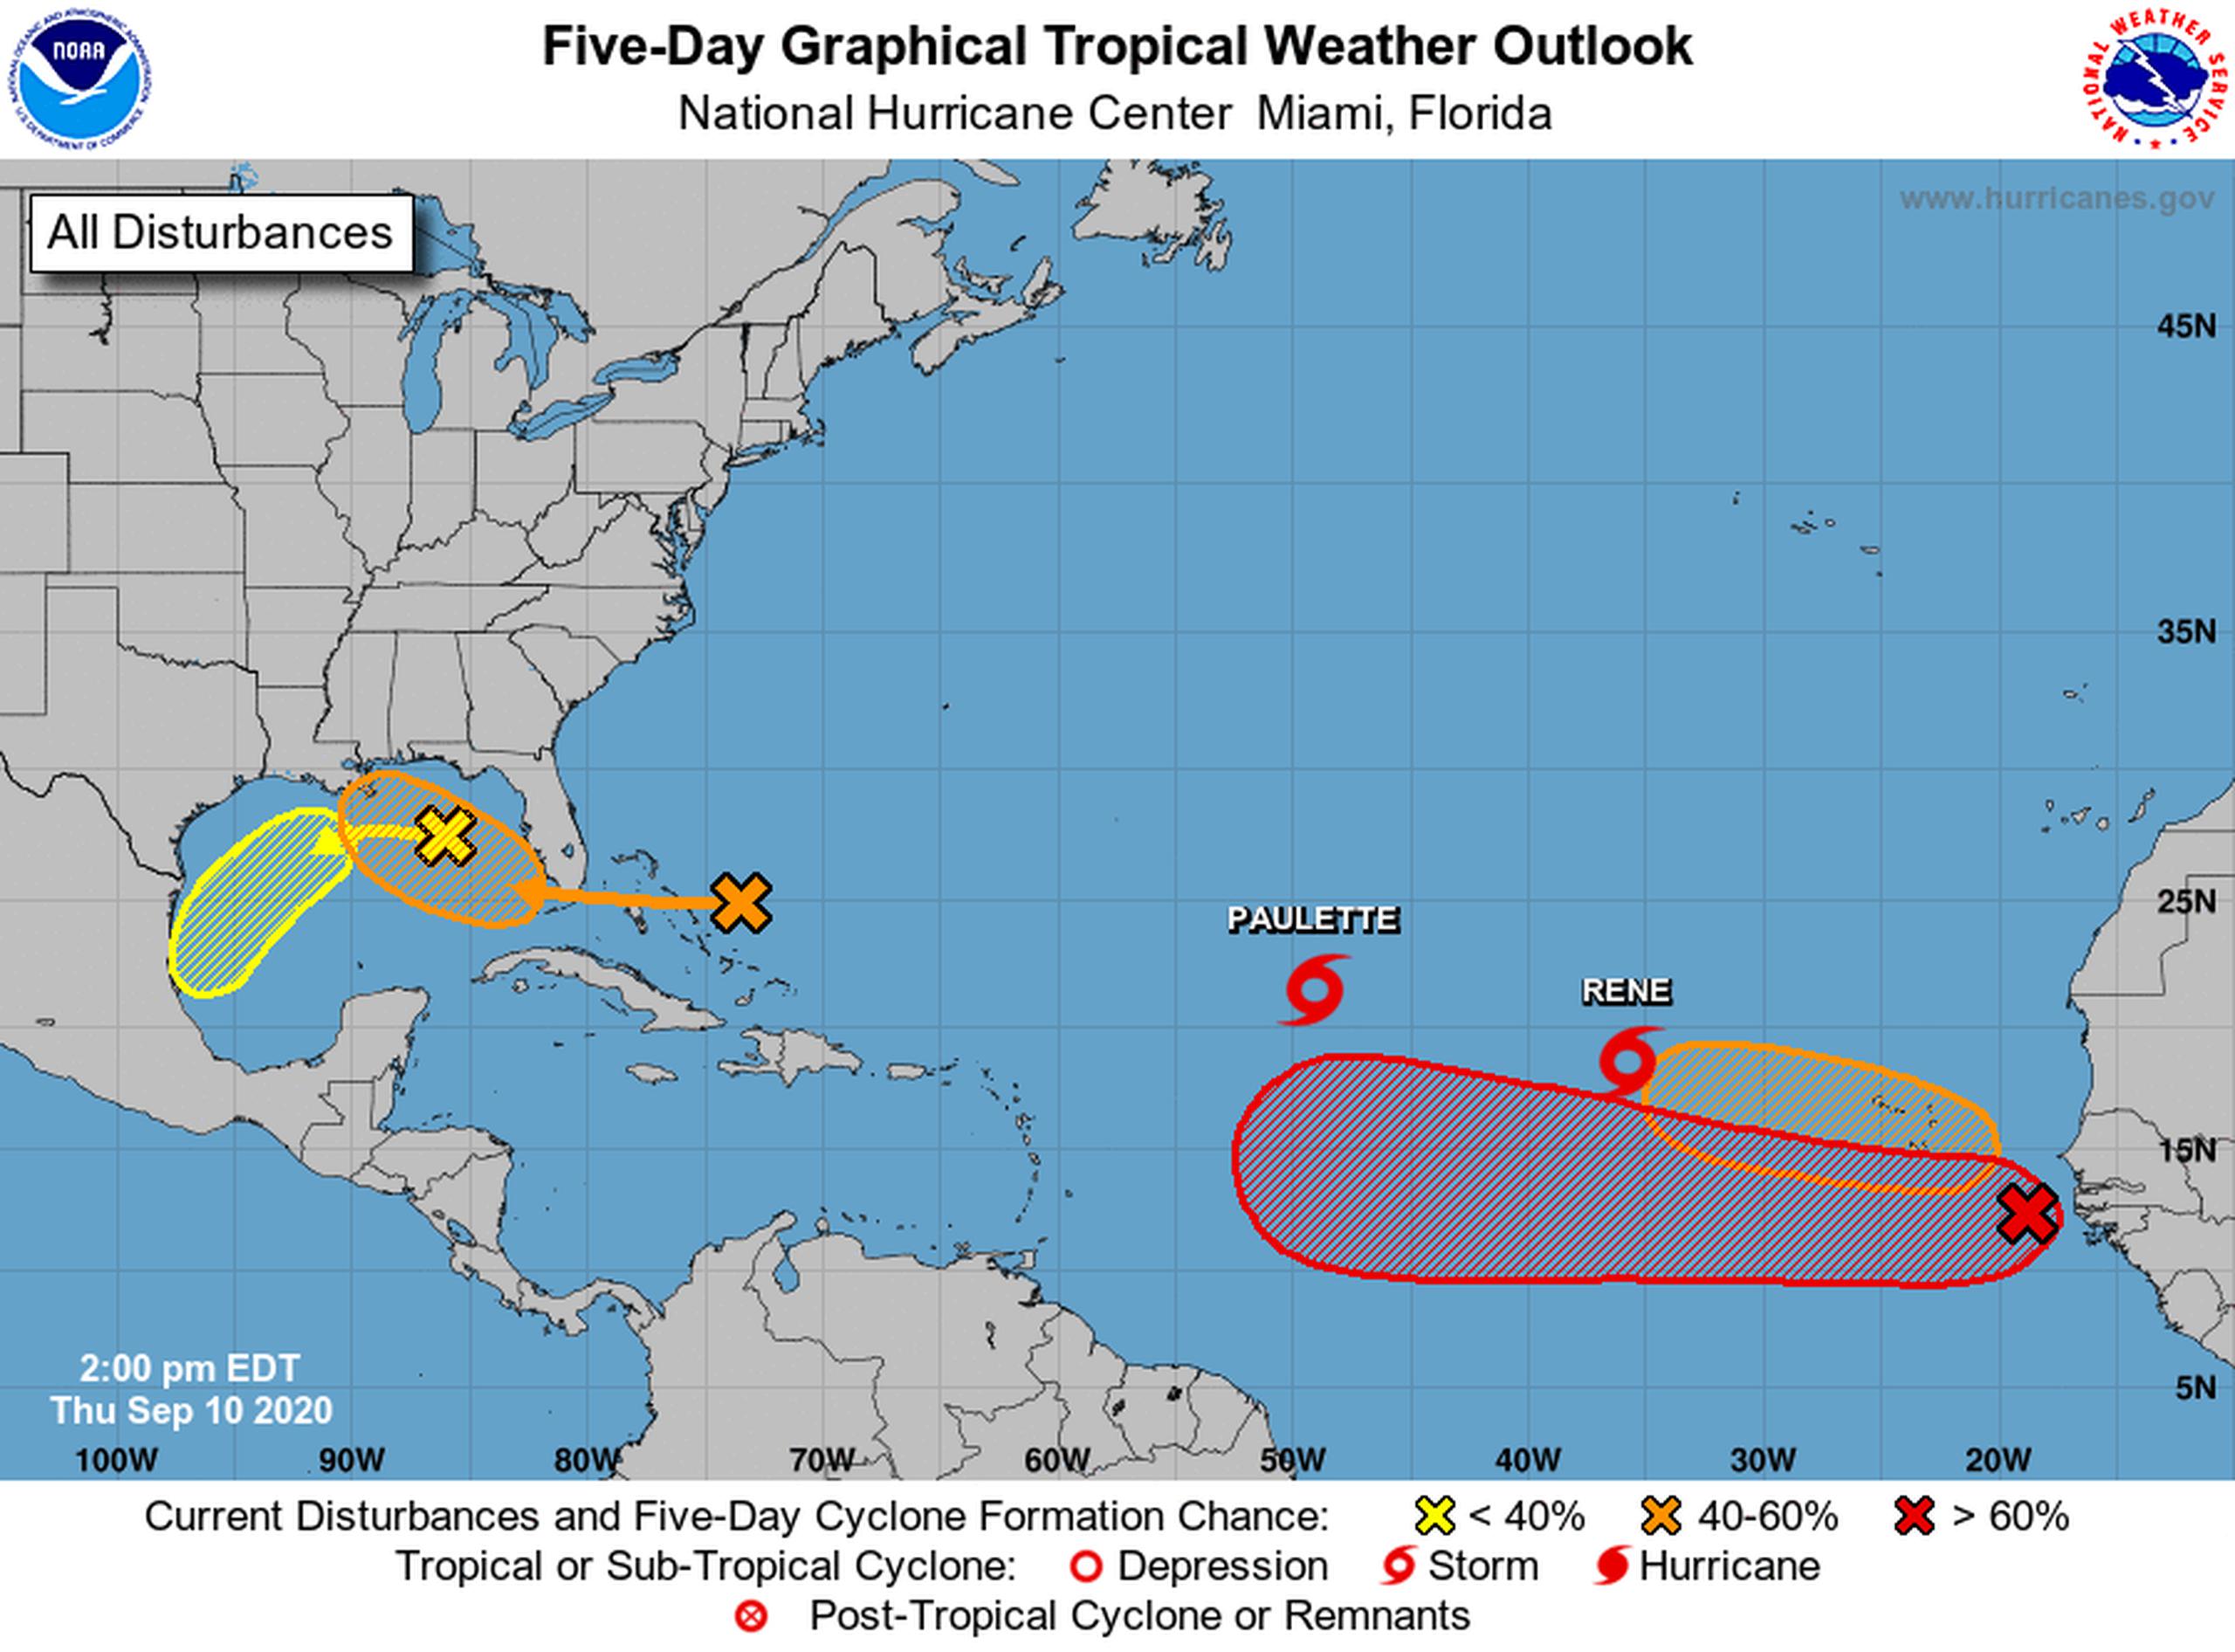 El Centro de Huracanes de Estados Unidos vigila dos tormentas y cuatro áreas de baja presión por posible desarrollo.